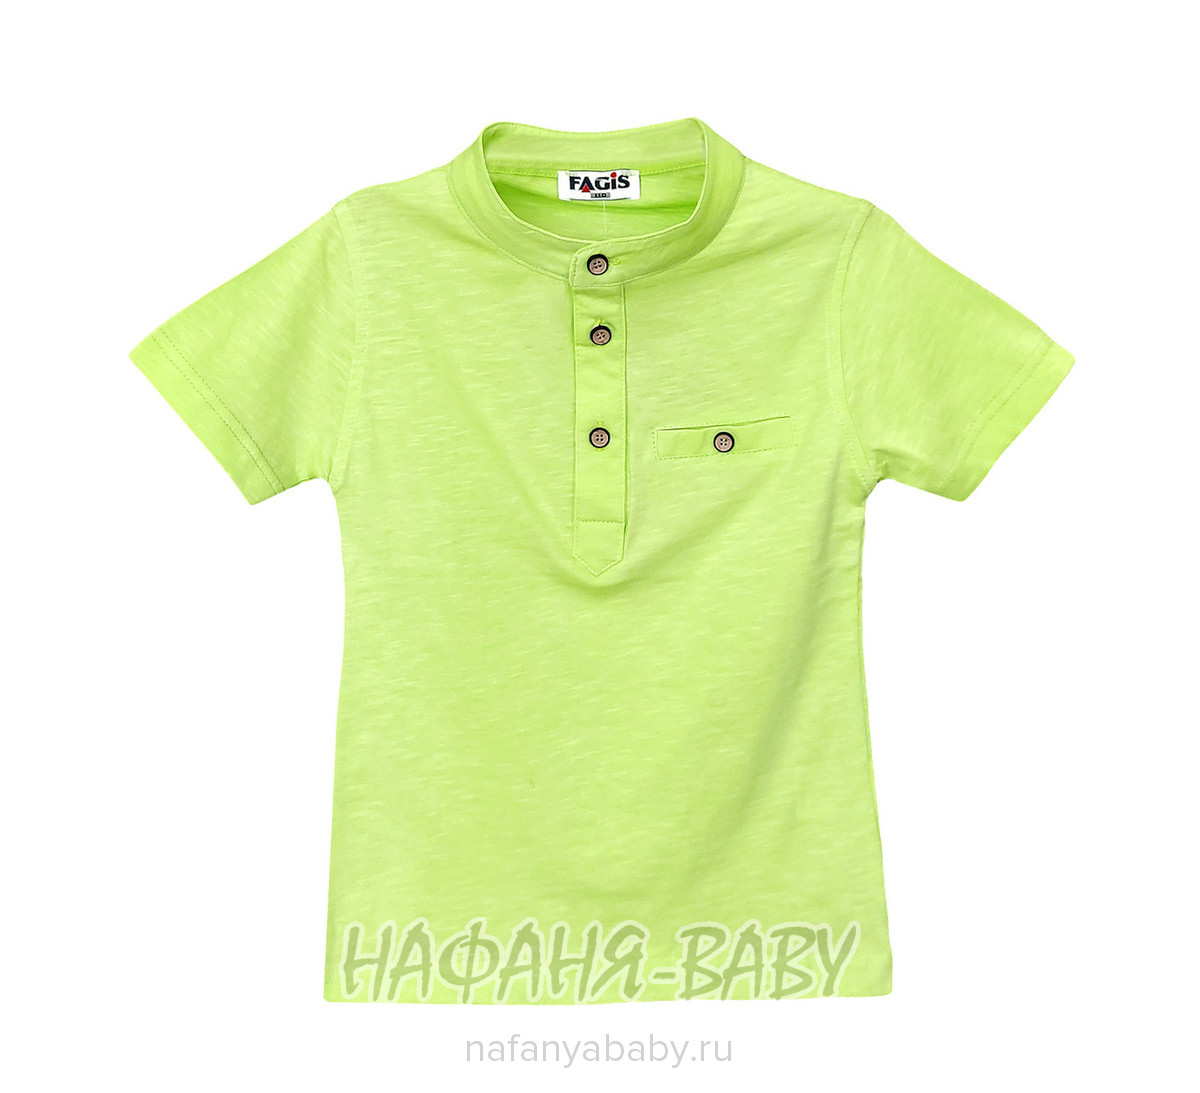 Детская футболка FAGIS , купить в интернет магазине Нафаня. арт: 9011.